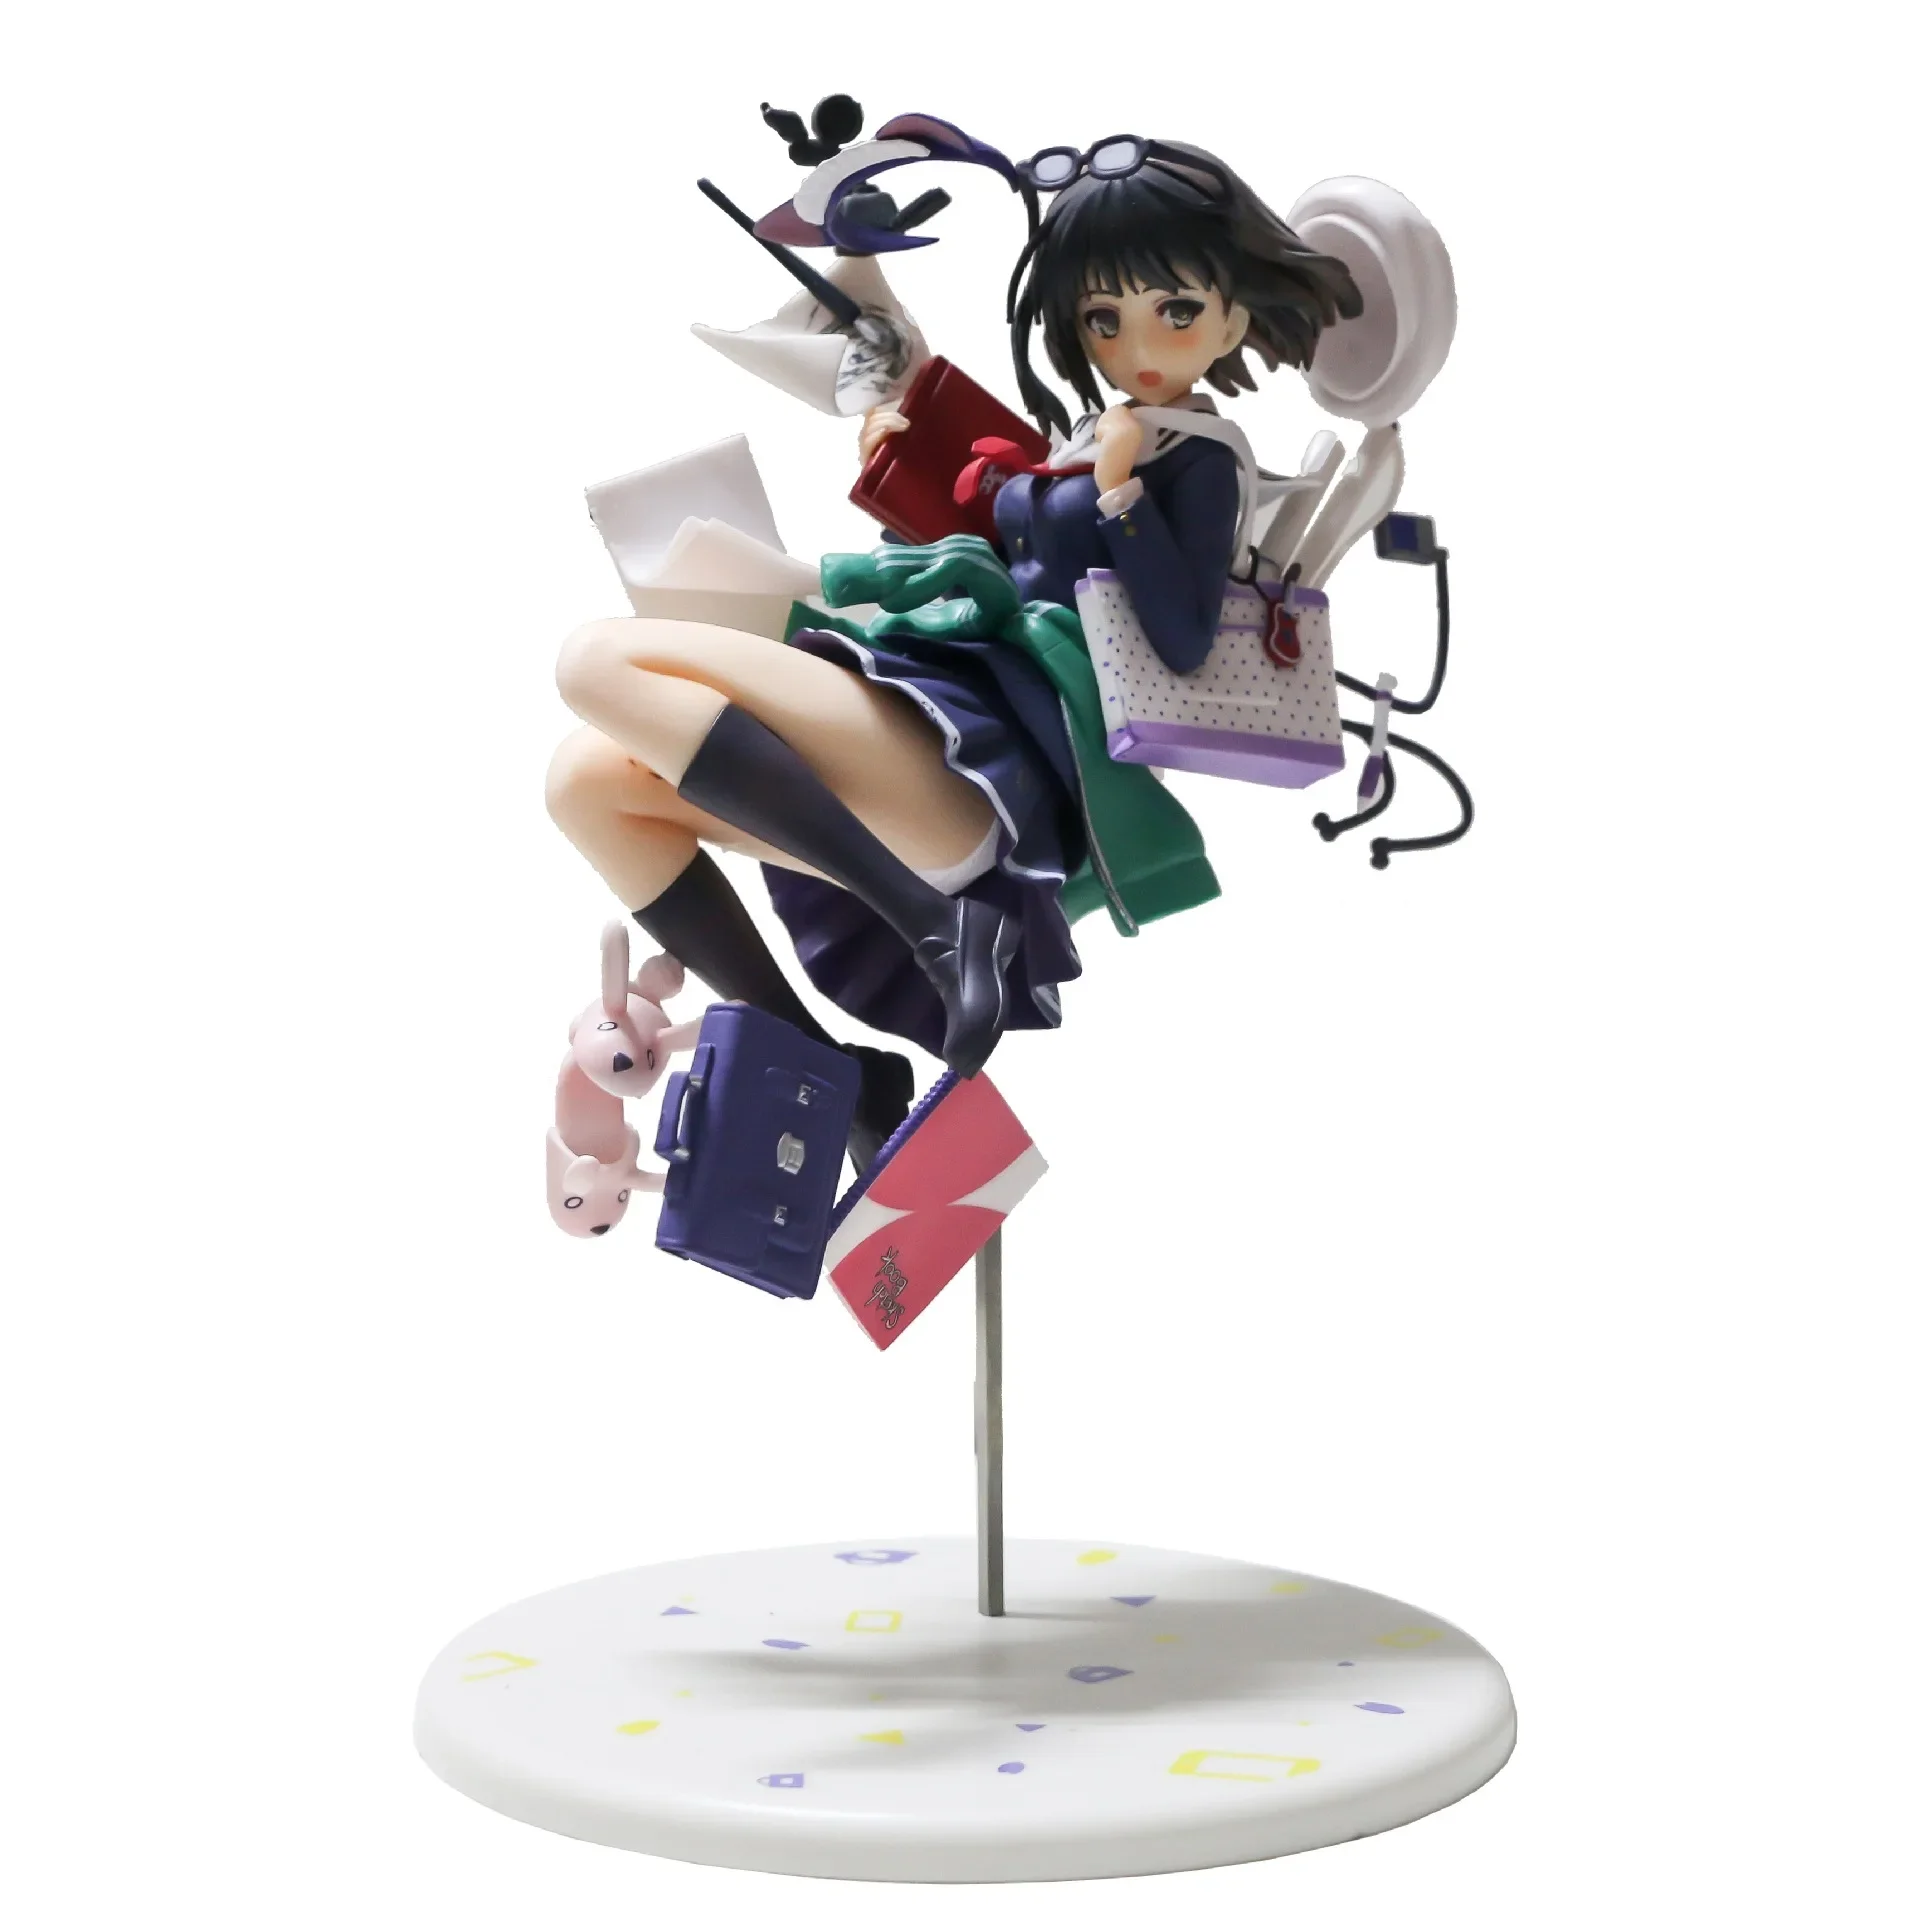 

Аниме фигурки Аки томоя, летающая осанка, волшебная девушка, модель Megumi Kato, экшн-фигурки, ПВХ игрушки для мальчиков, подарки, настольное украшение